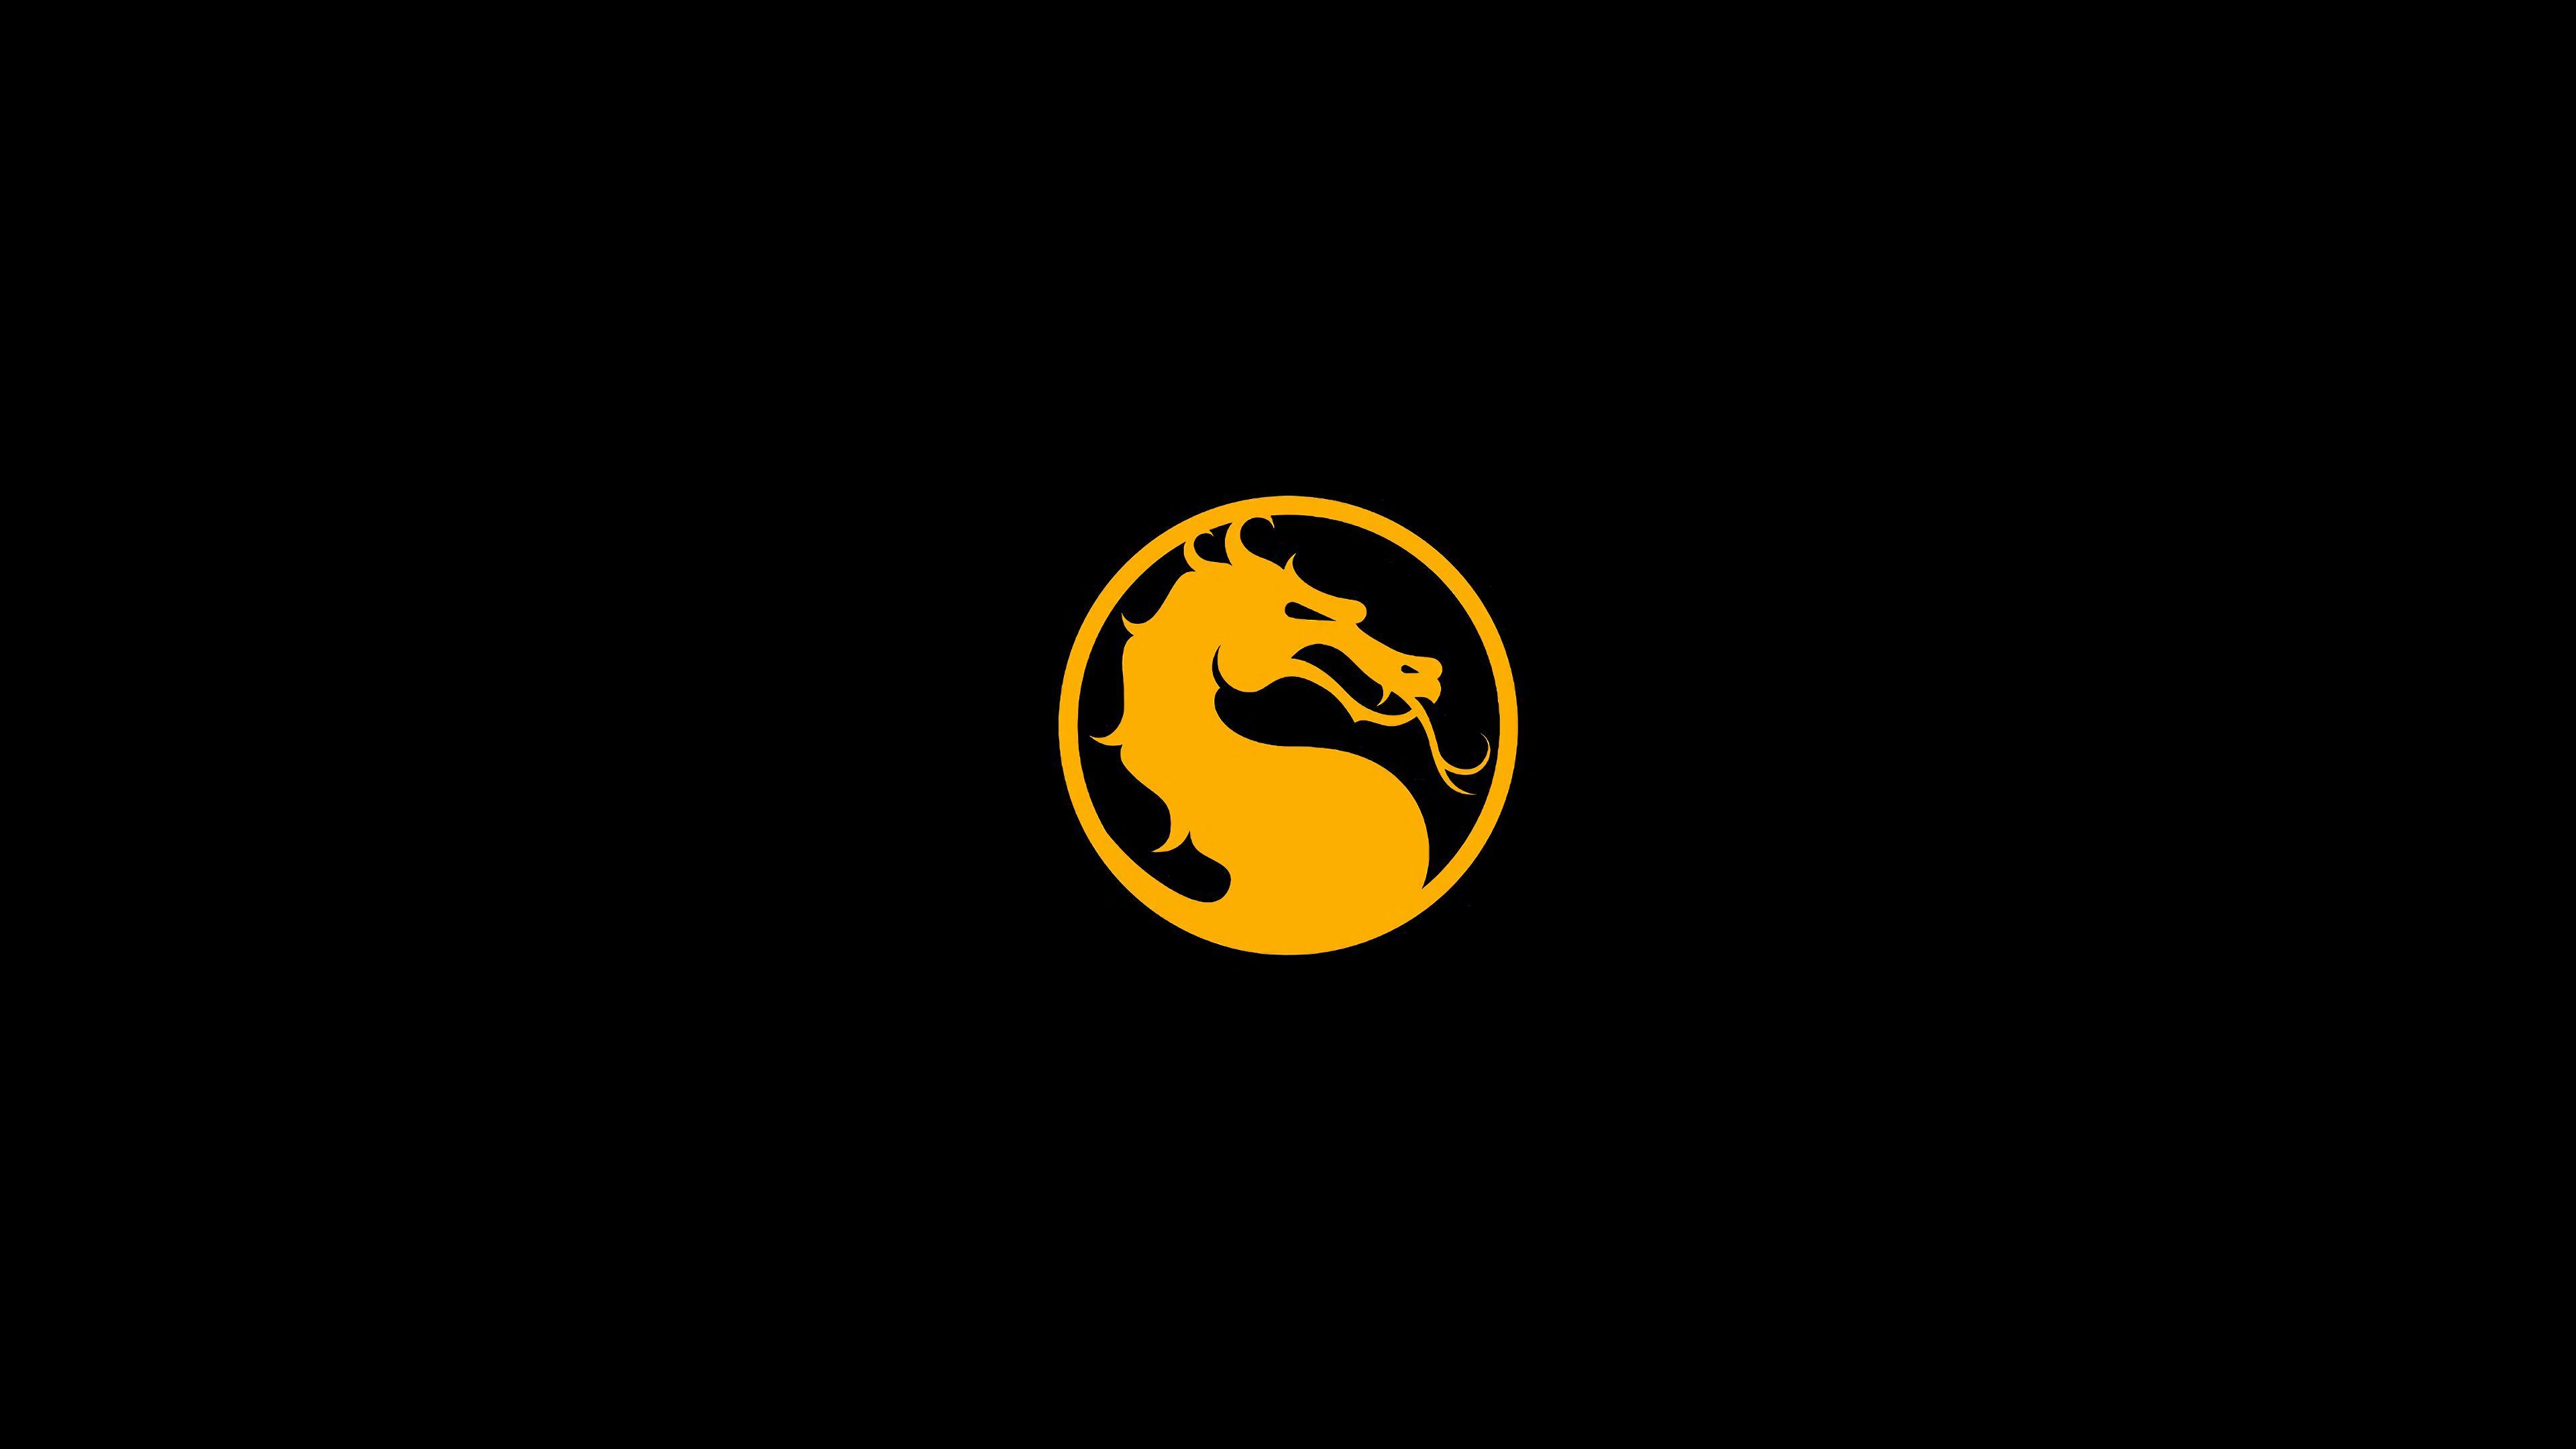 All Mortal Kombat Logo - Dragon logo » Mortal Kombat games, fan site!